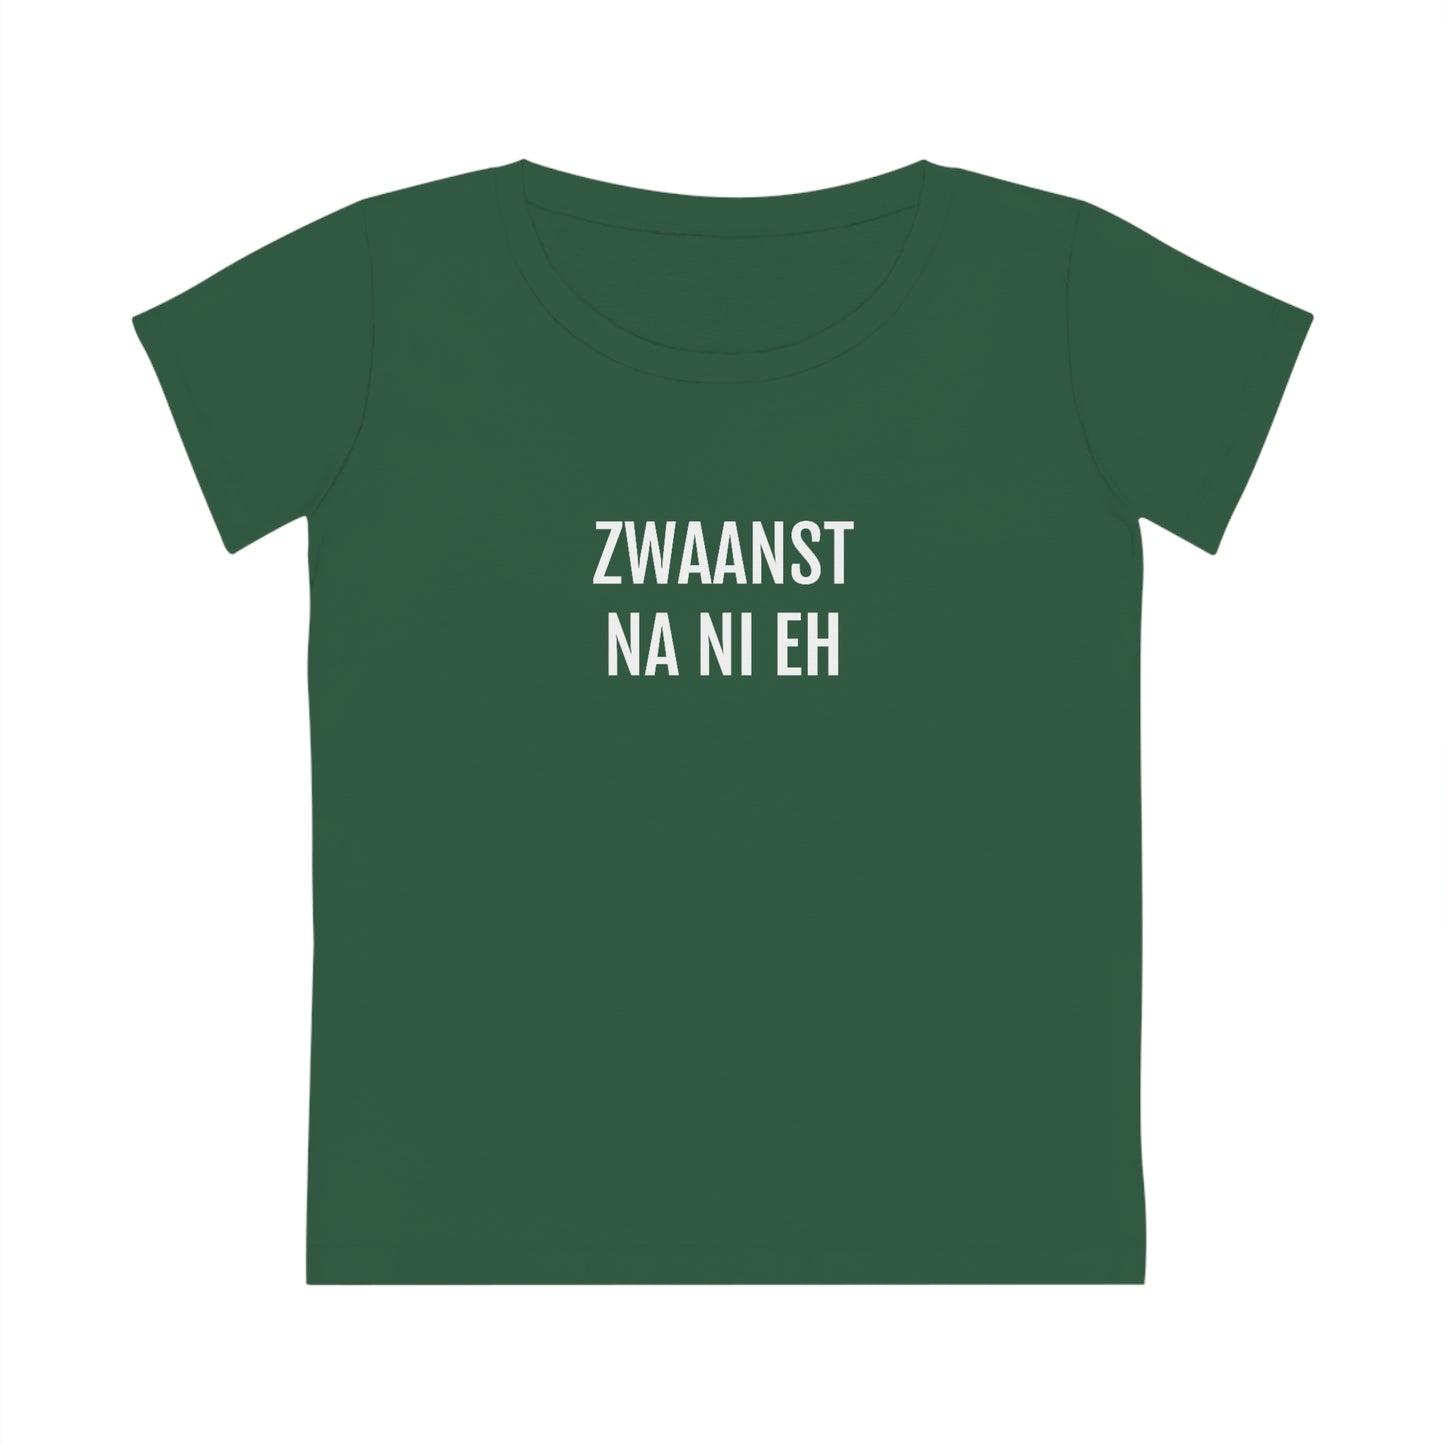 ZWAANST NA NI EH | Dames T-Shirt uit Antwerpen